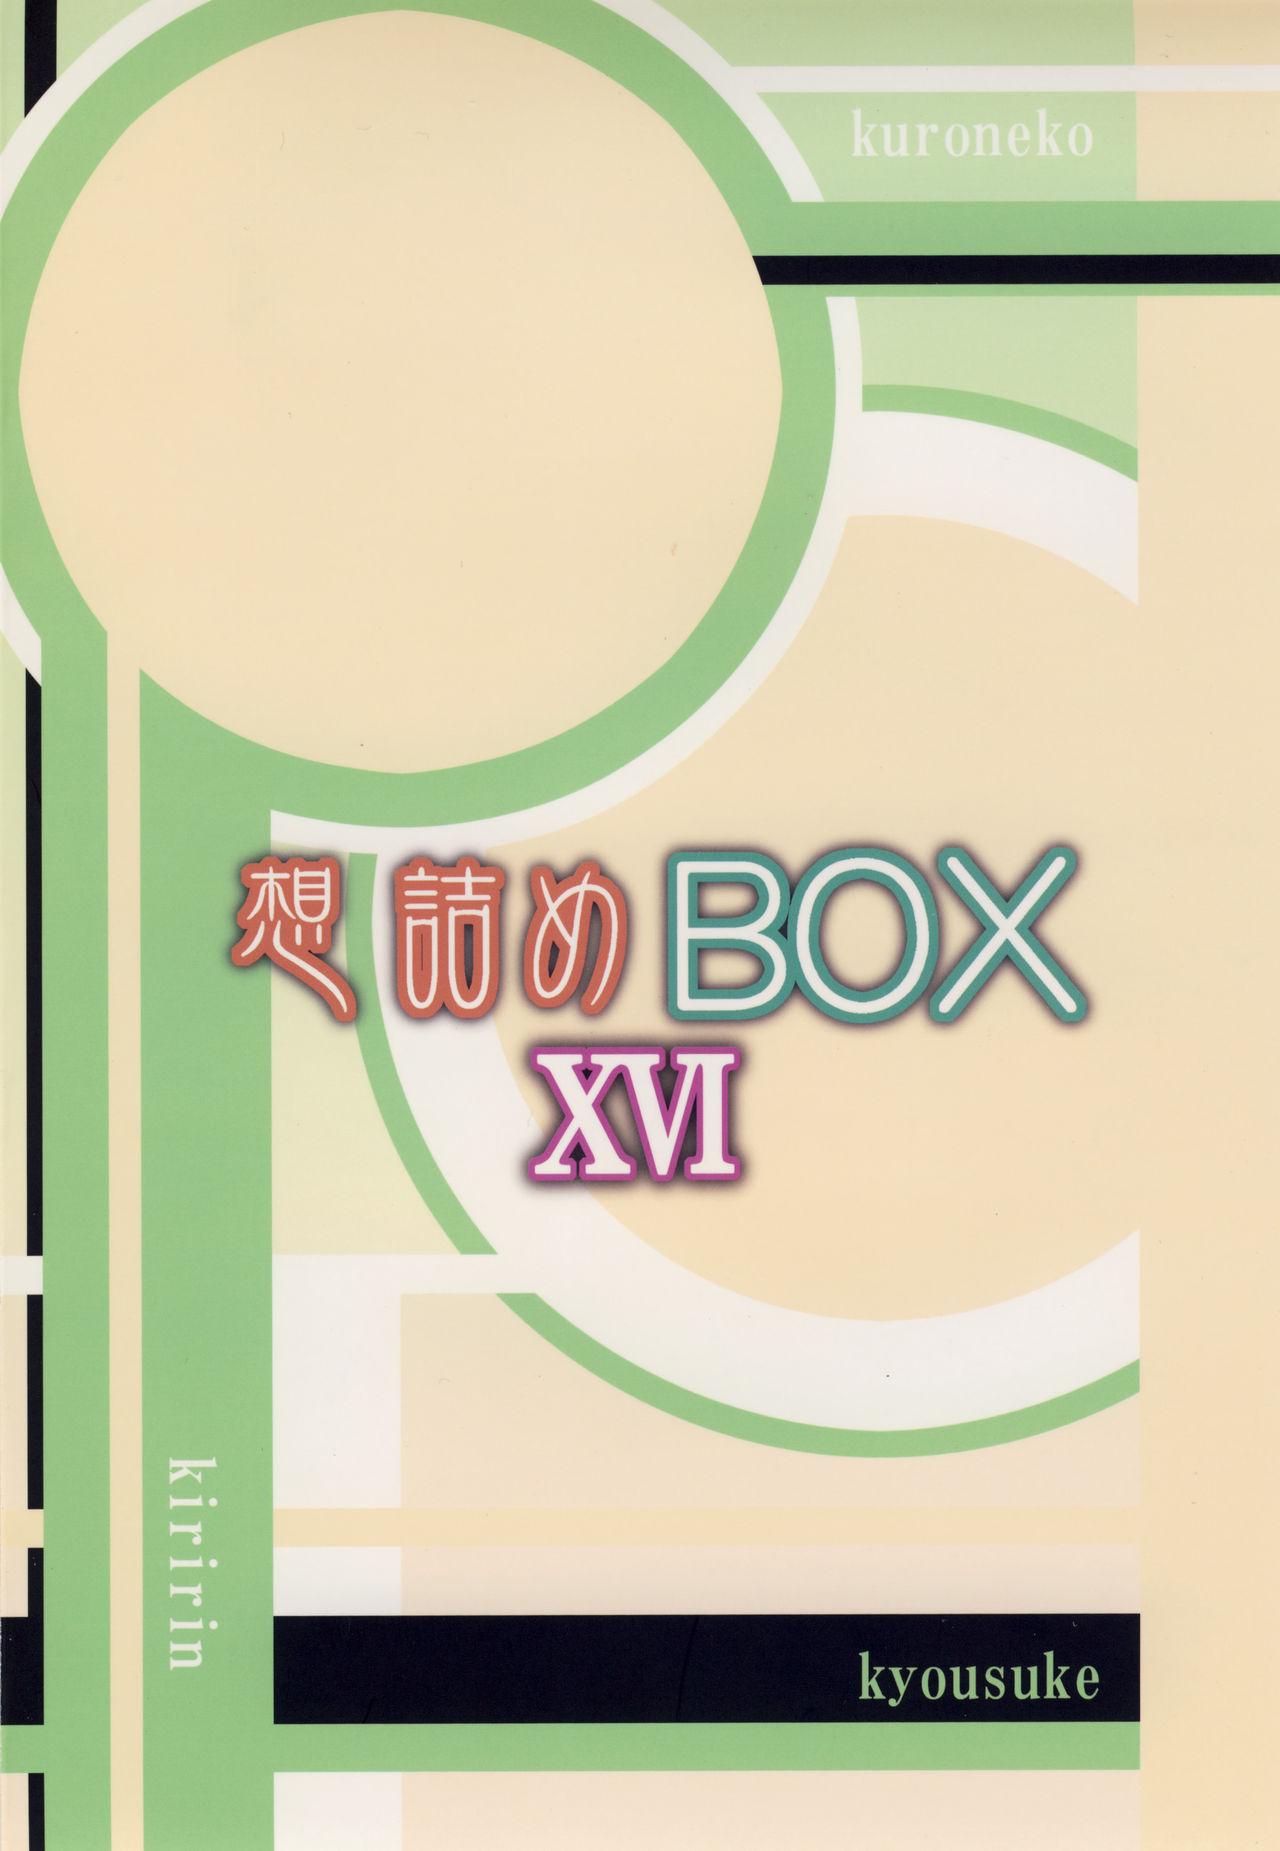 Omodume BOX XVI 27